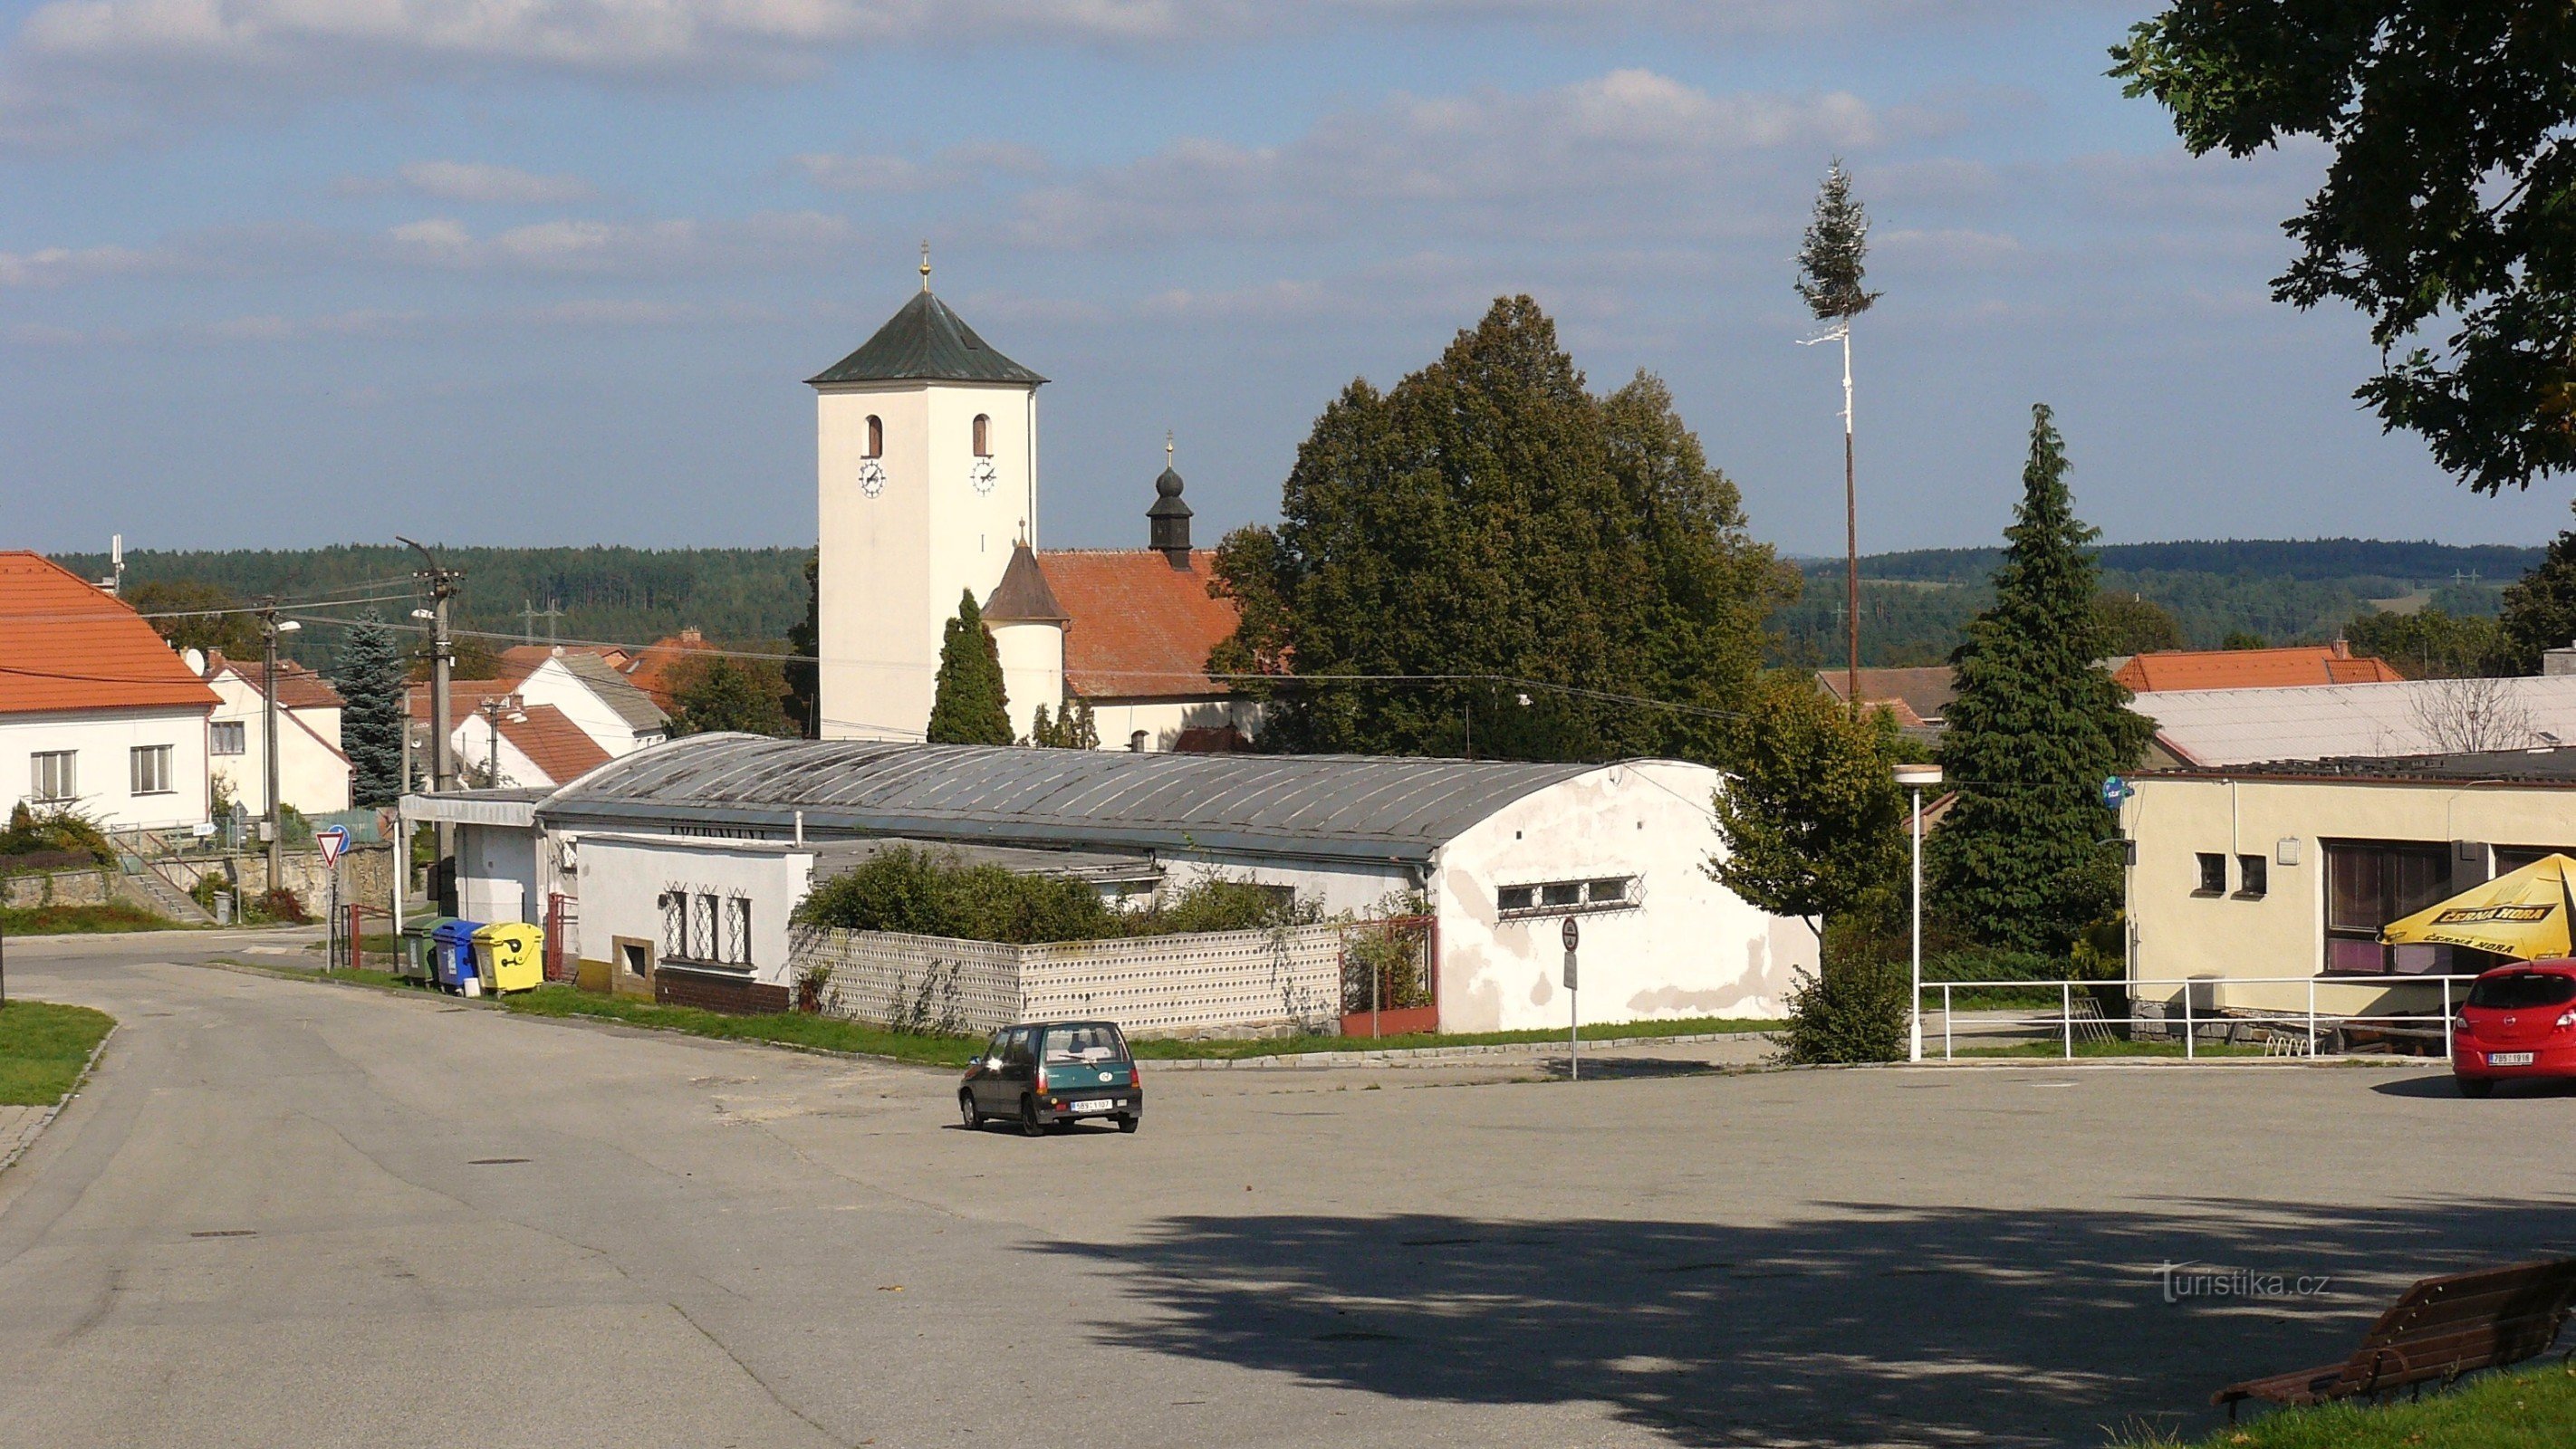 Zbraslav, Pyhän kirkko Lilja